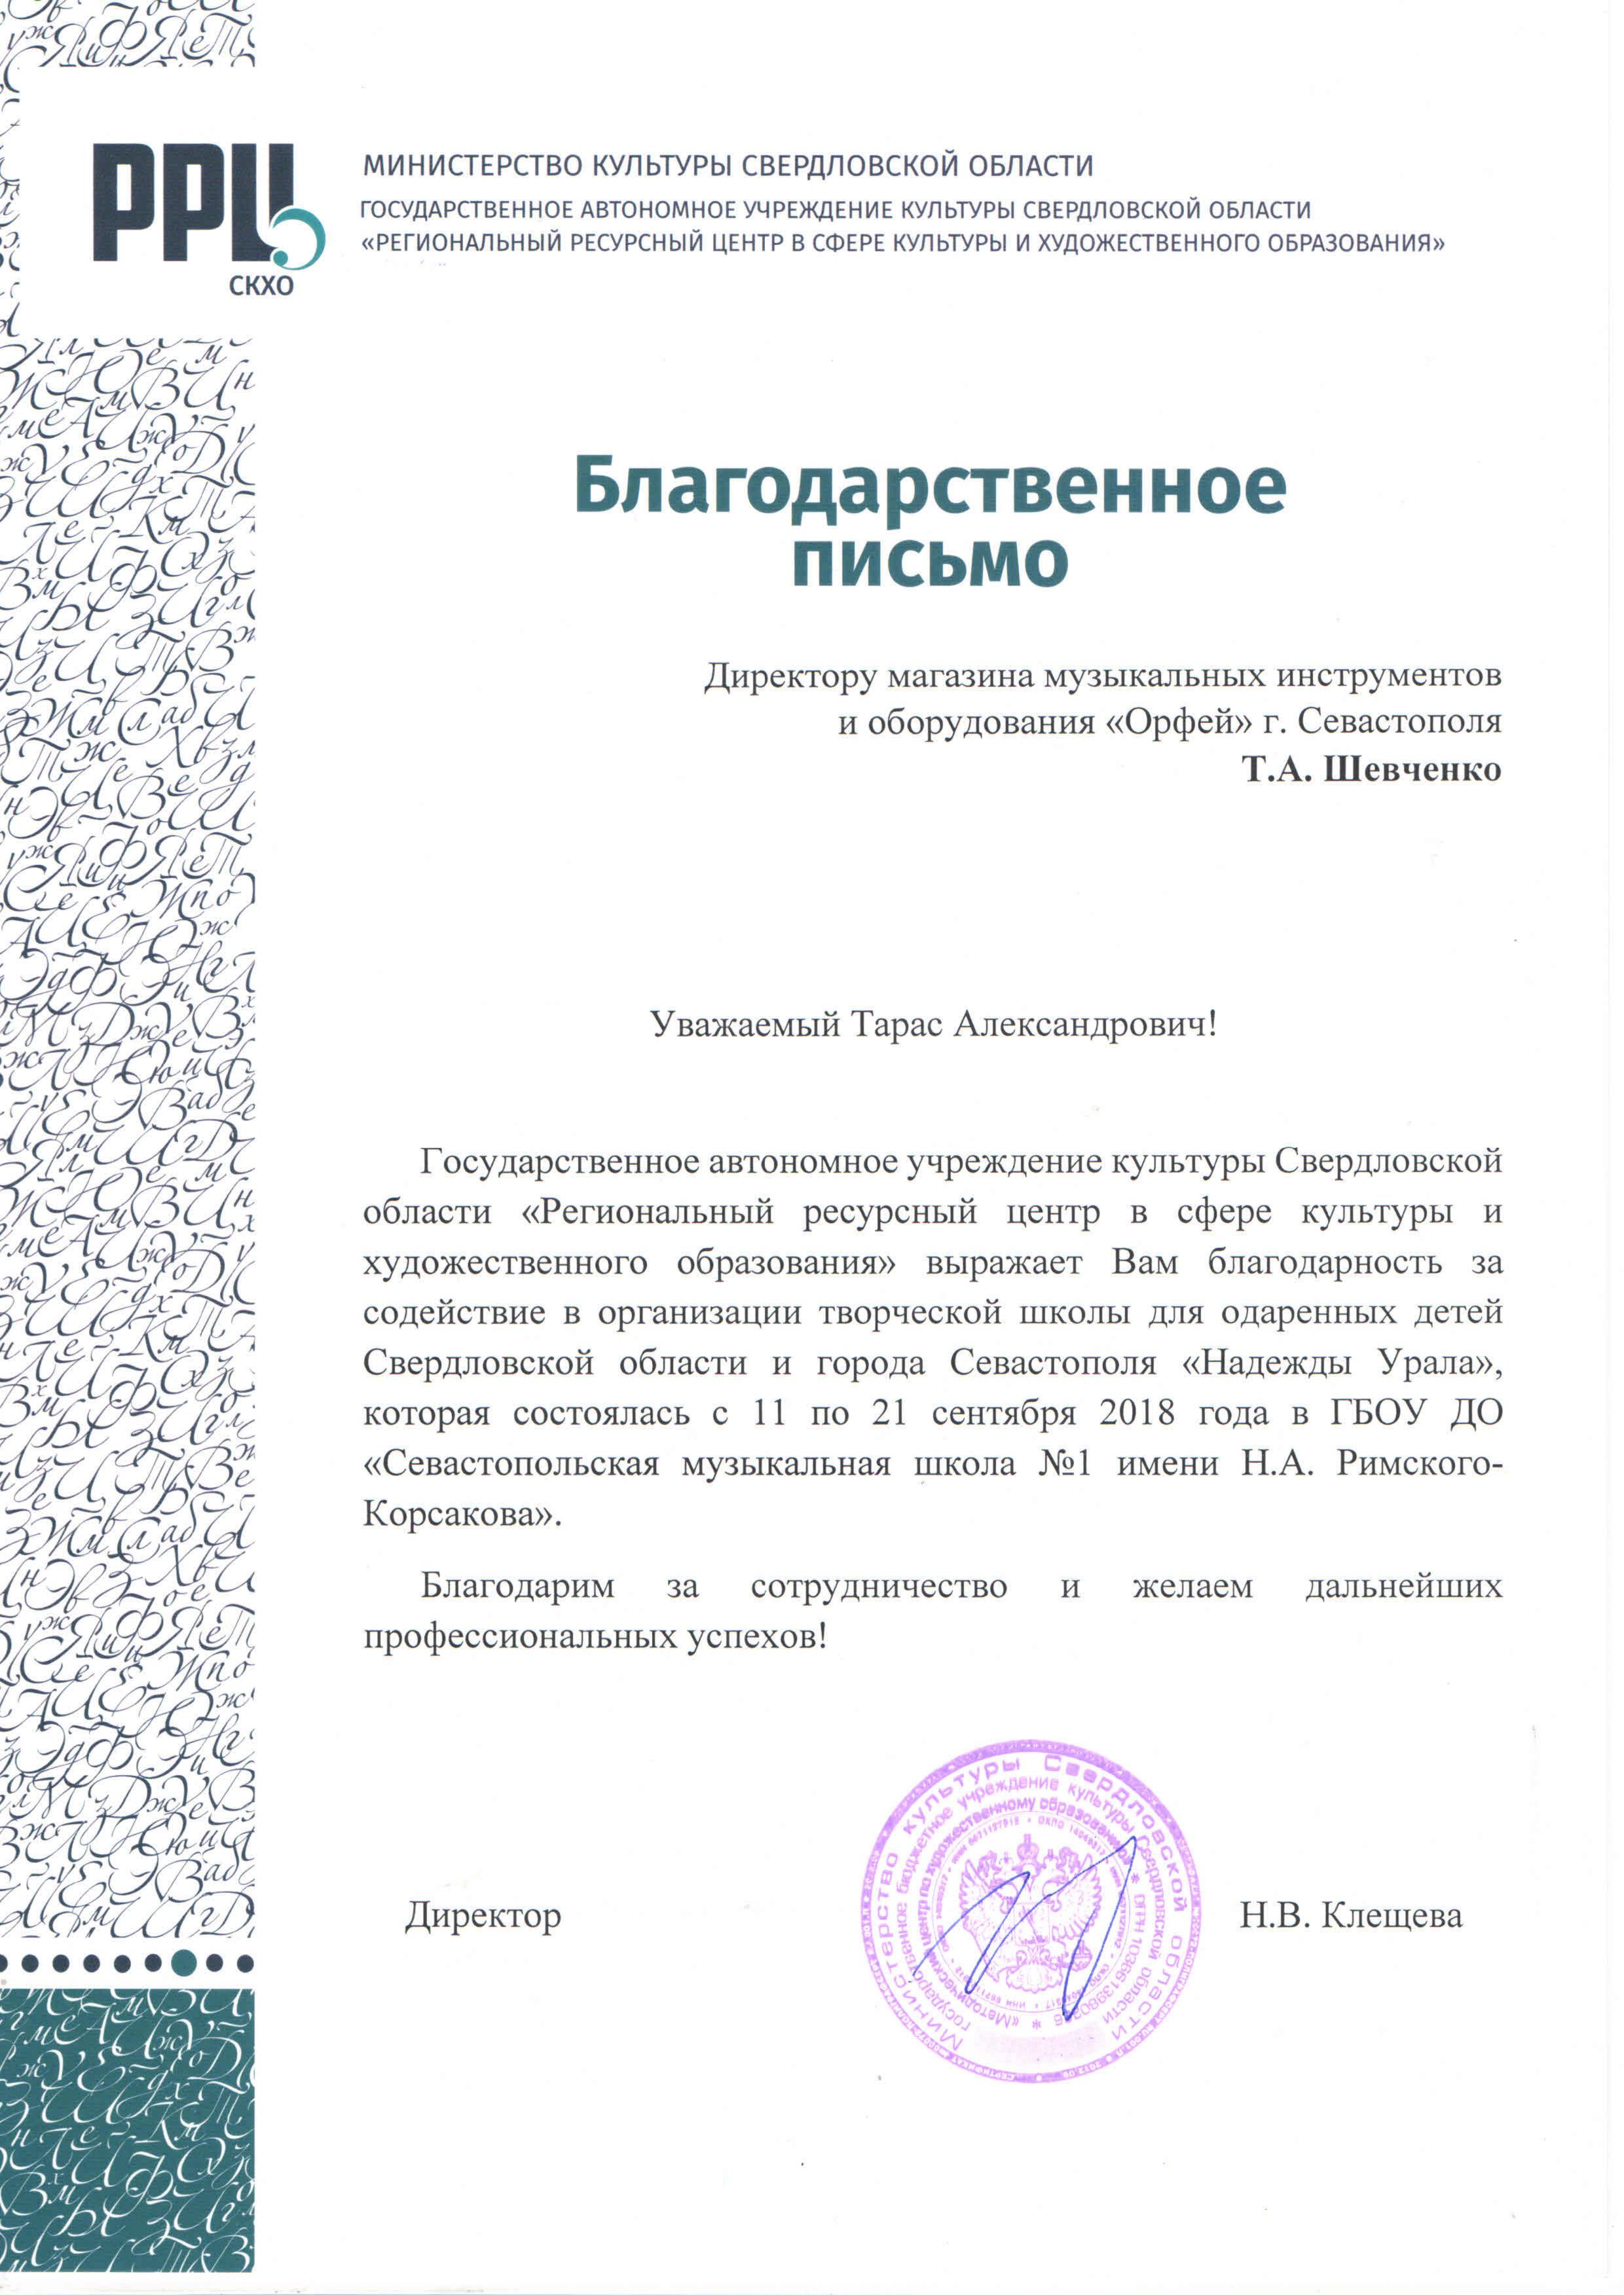 Благодарное письмо от Министерства культуры Свердловской области